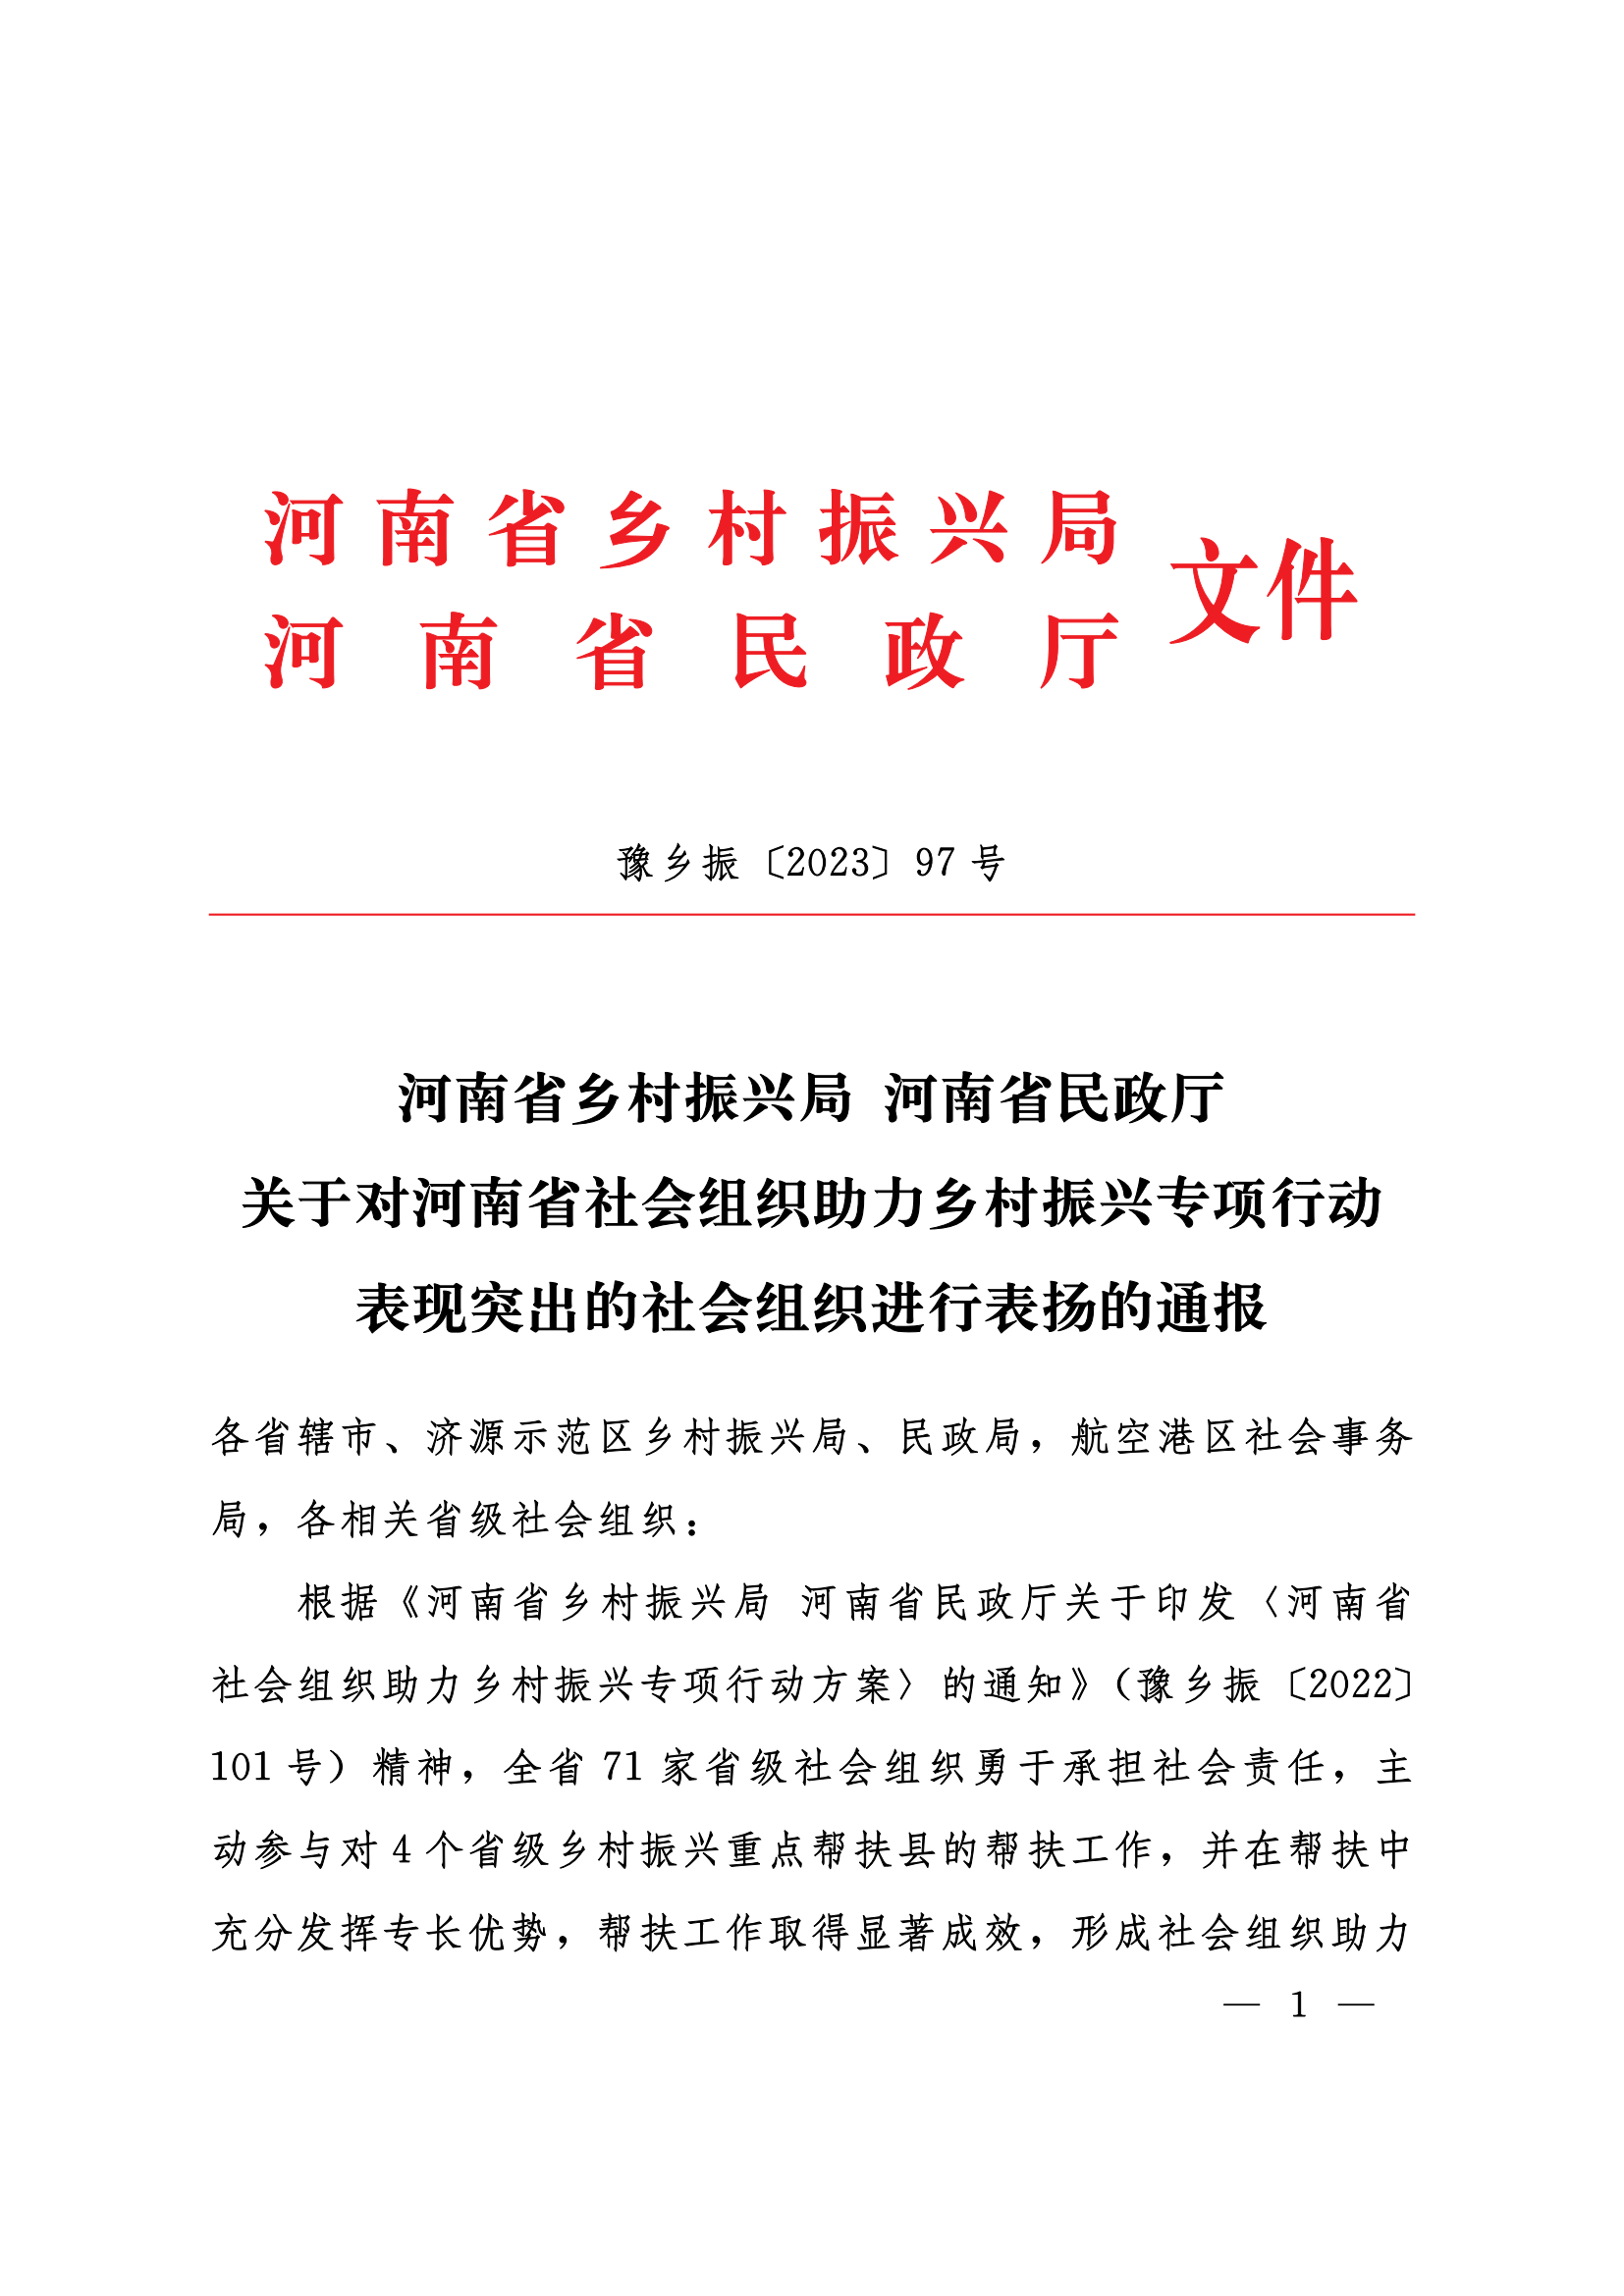 关于对河南省社会组织助力乡村振兴专项行动表现突出的社会组织进行表扬的通报_00.png